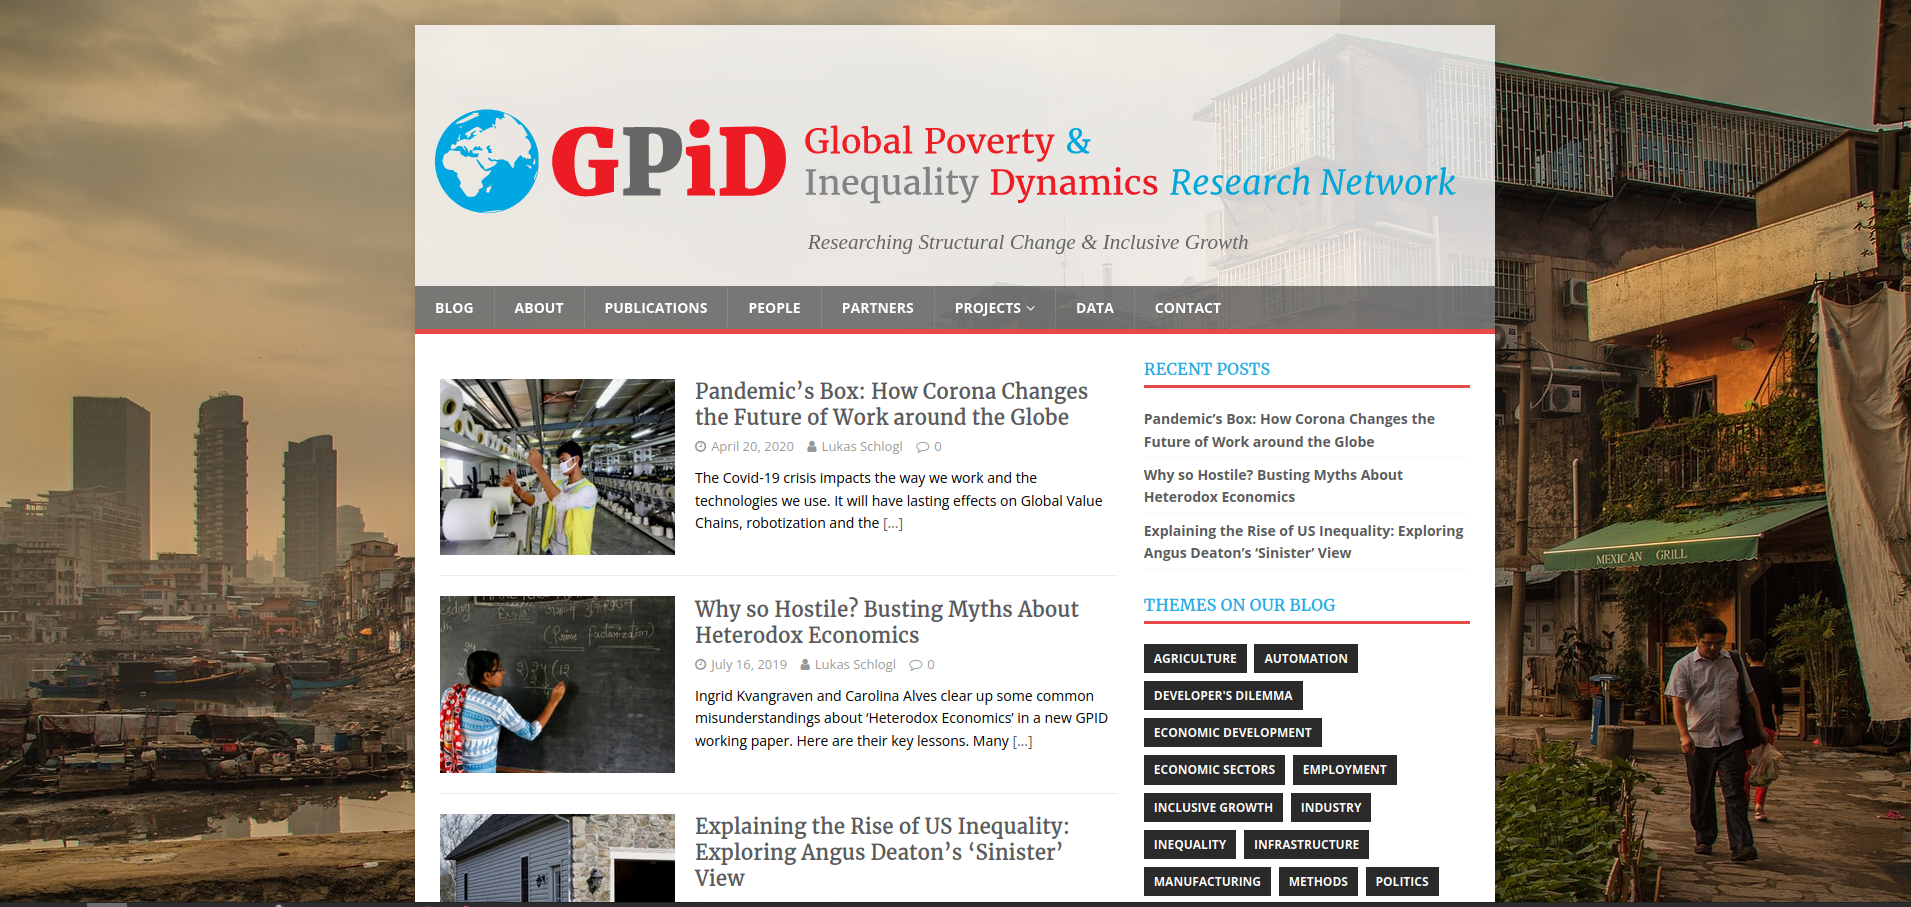 GPID Network